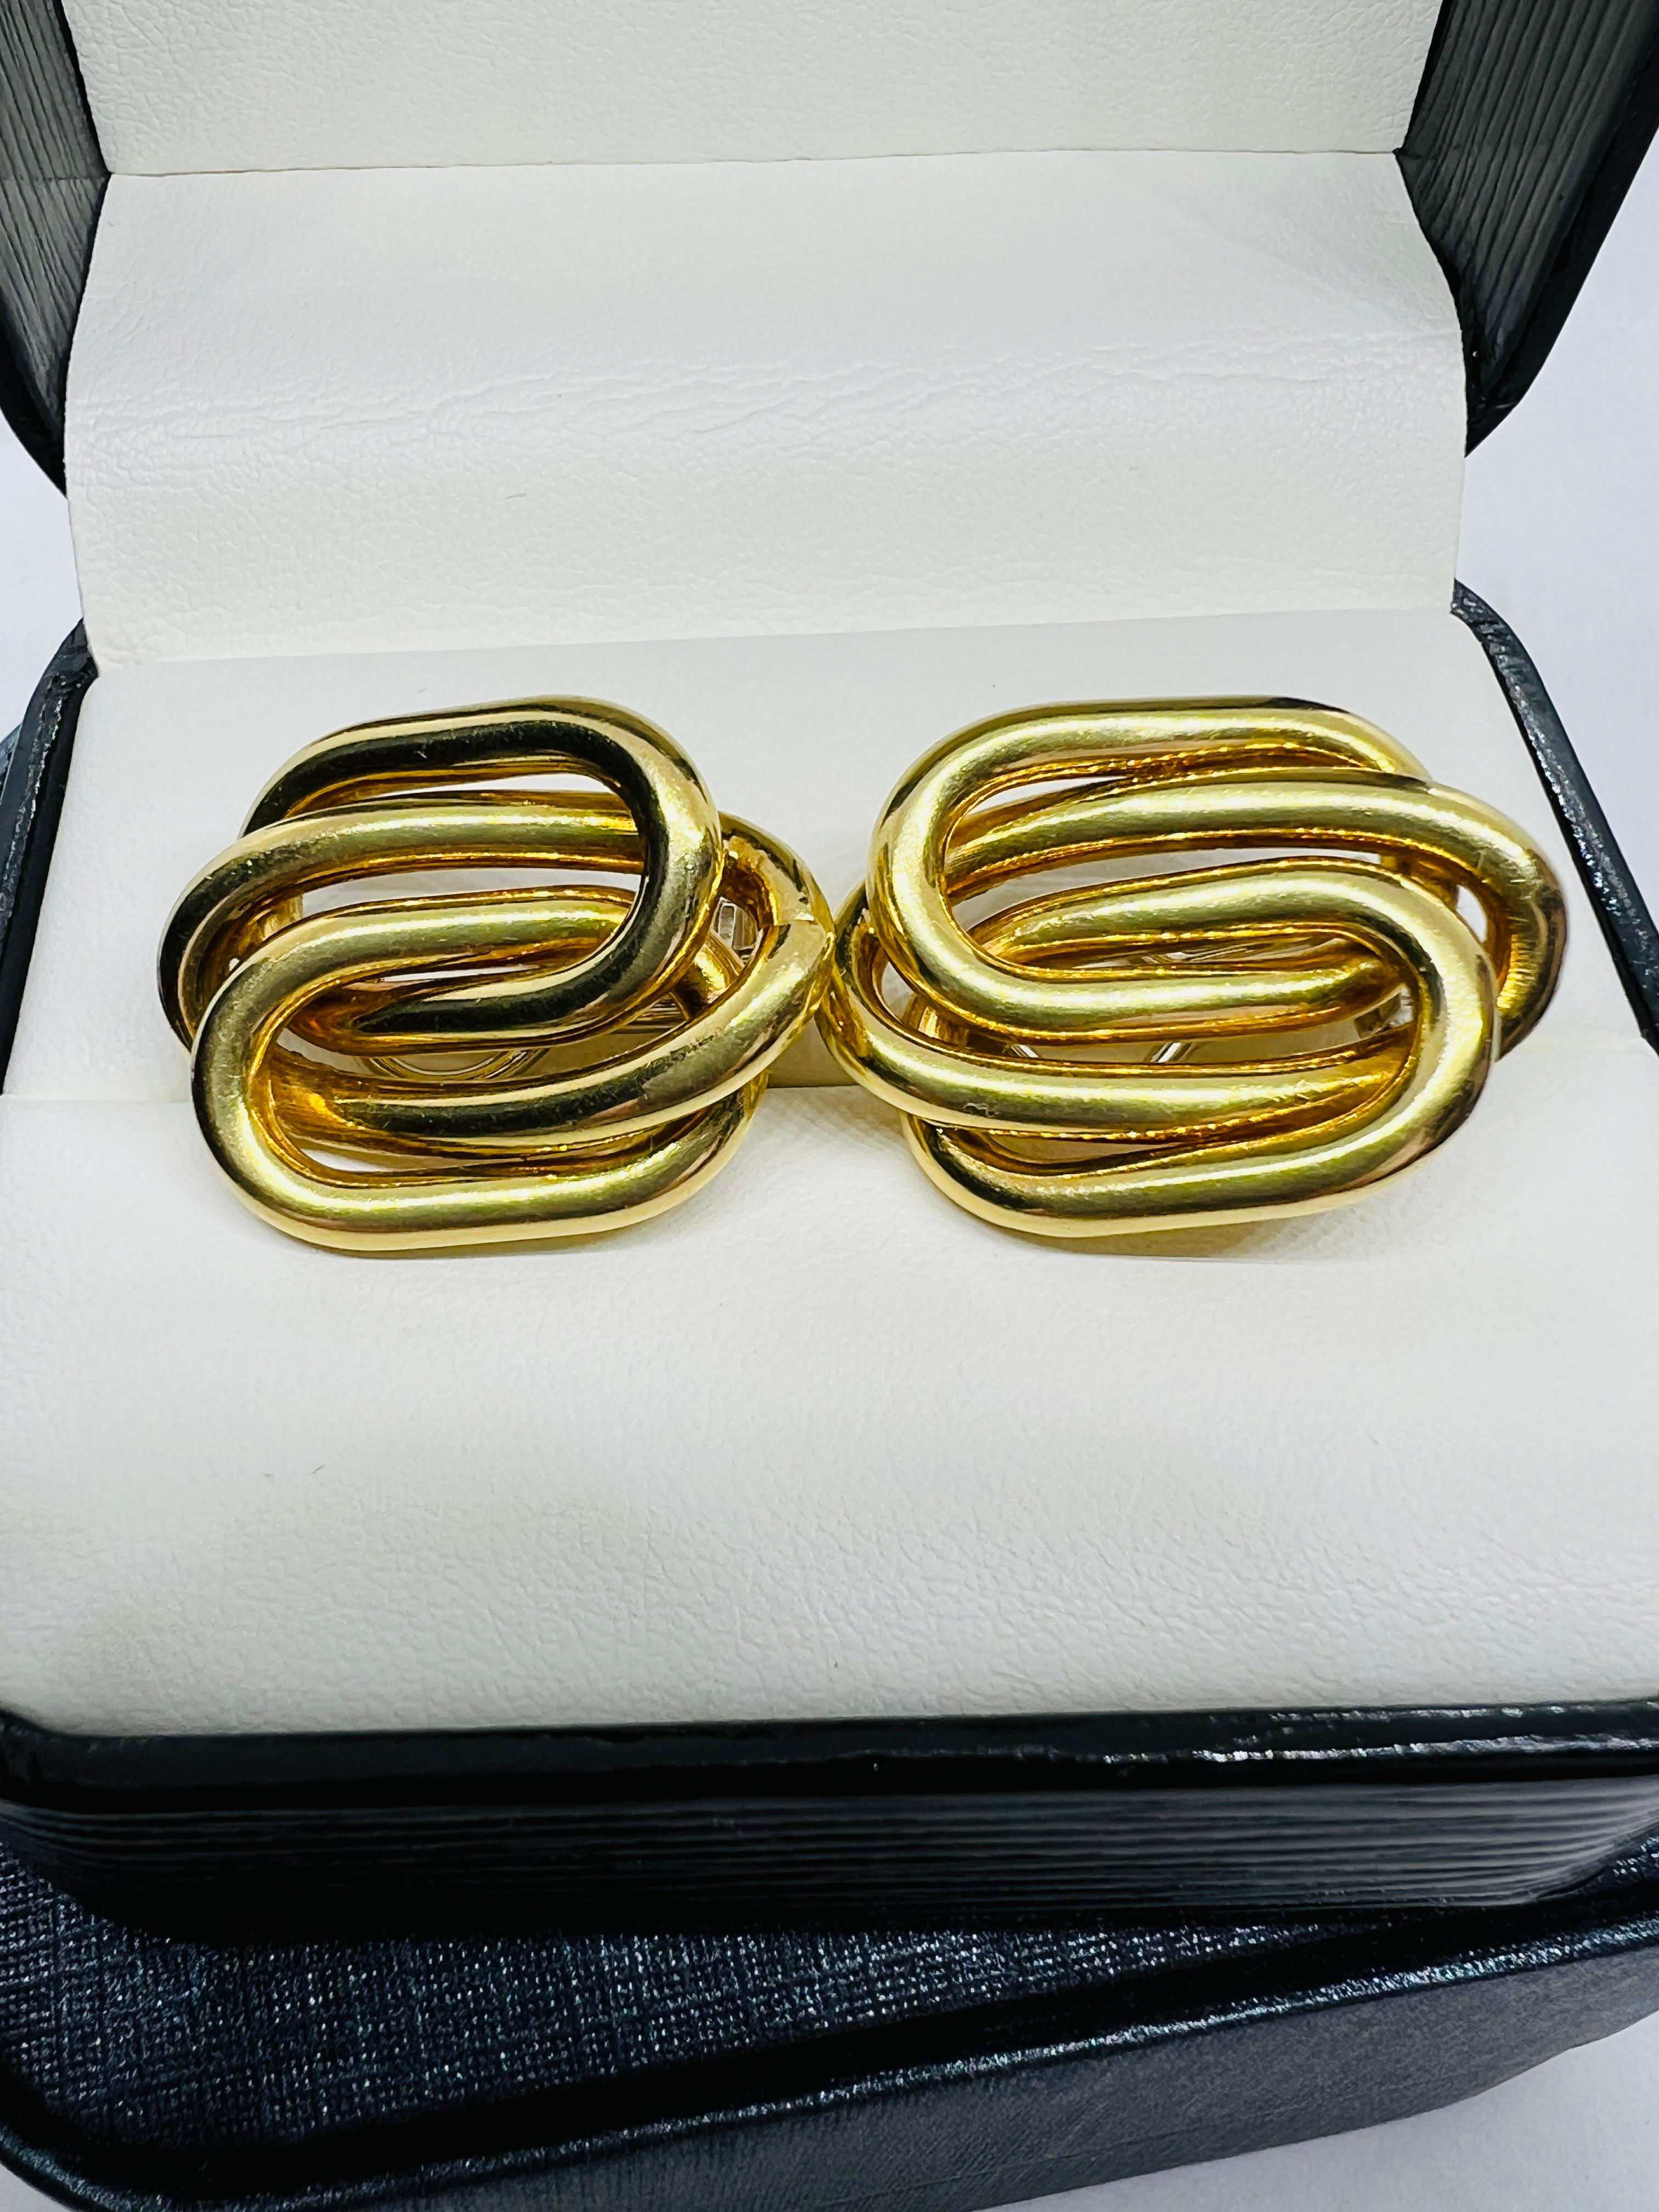 Designer Bvlgari 18K Yellow Gold Mid Century Modern Clip On Earrings 13.5 grams  1